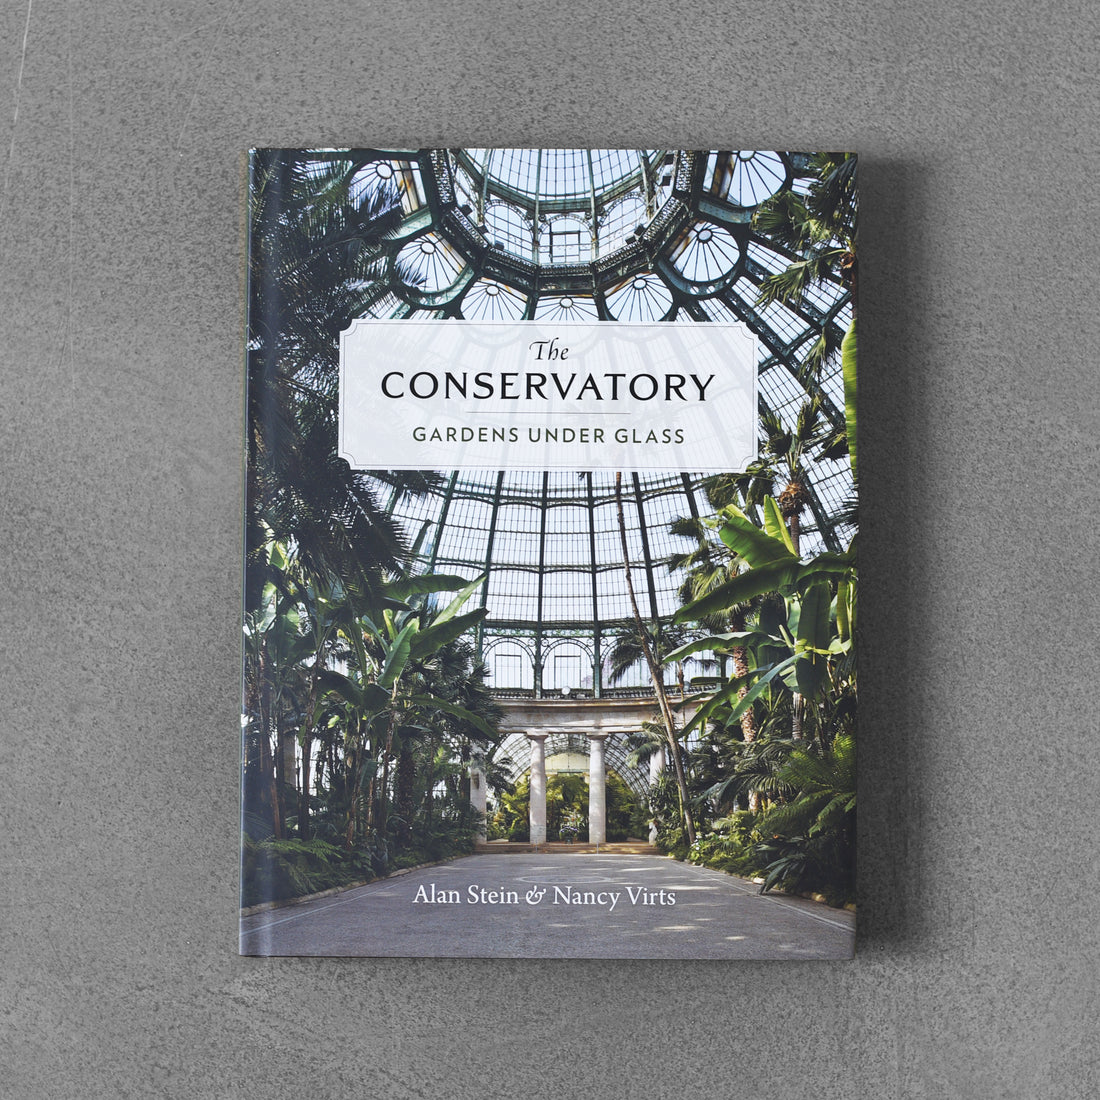 The Conservatory: Gardens under Glass - Alan Stein & Nancy Virts